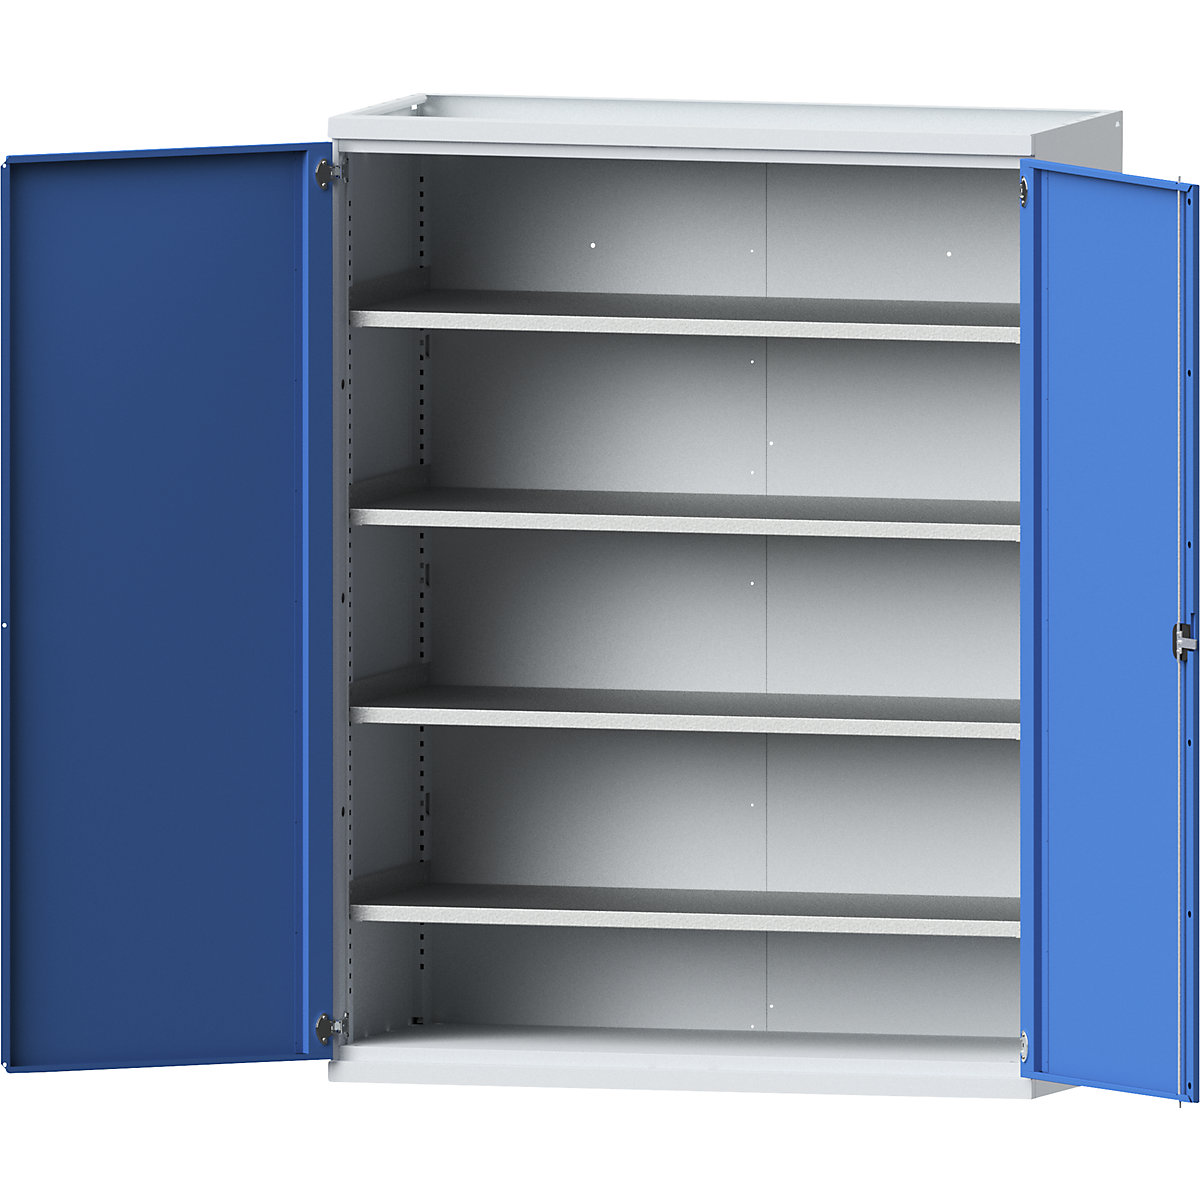 JUMBO heavy duty cupboard made of sheet steel – eurokraft pro